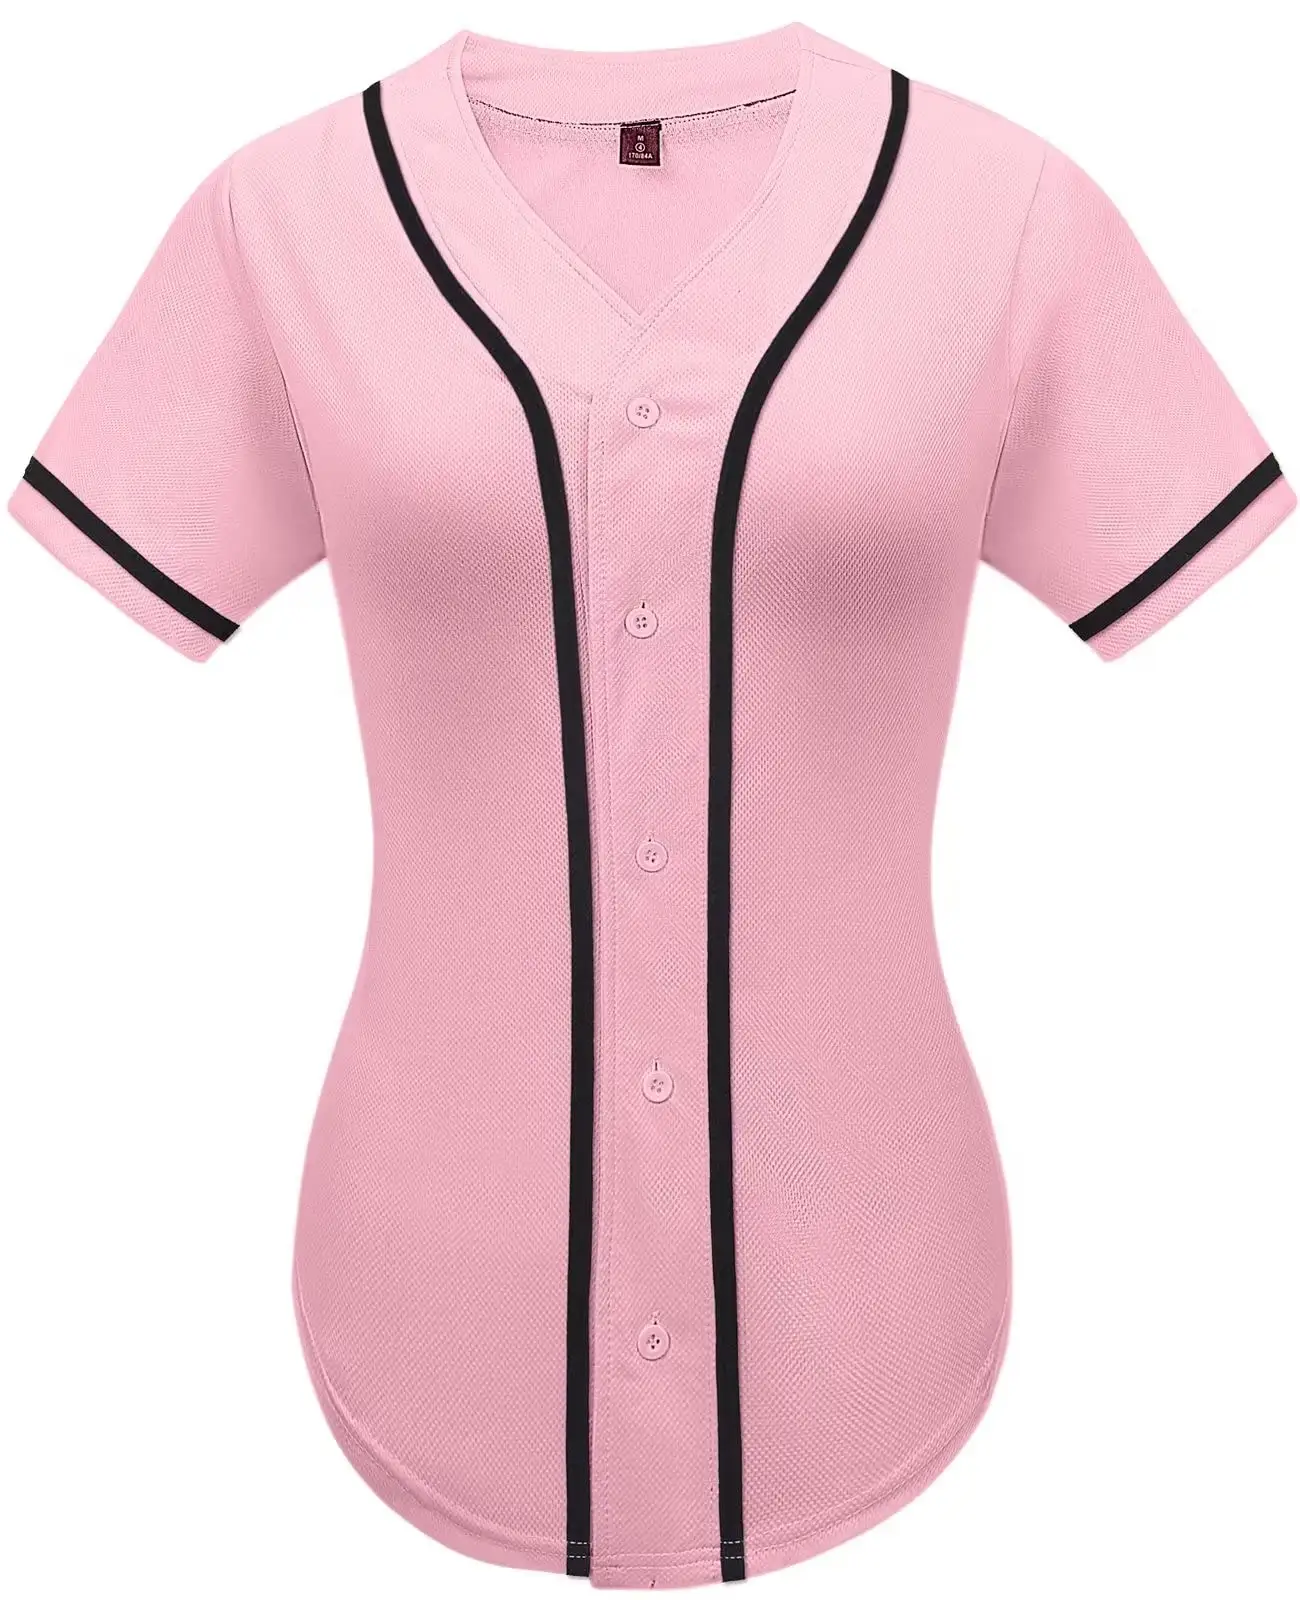 Hochwertiges Damenbaseballtrikot geknöpftes einfarbiges T-Shirt Hip Hop Softball Sportaktivshirt